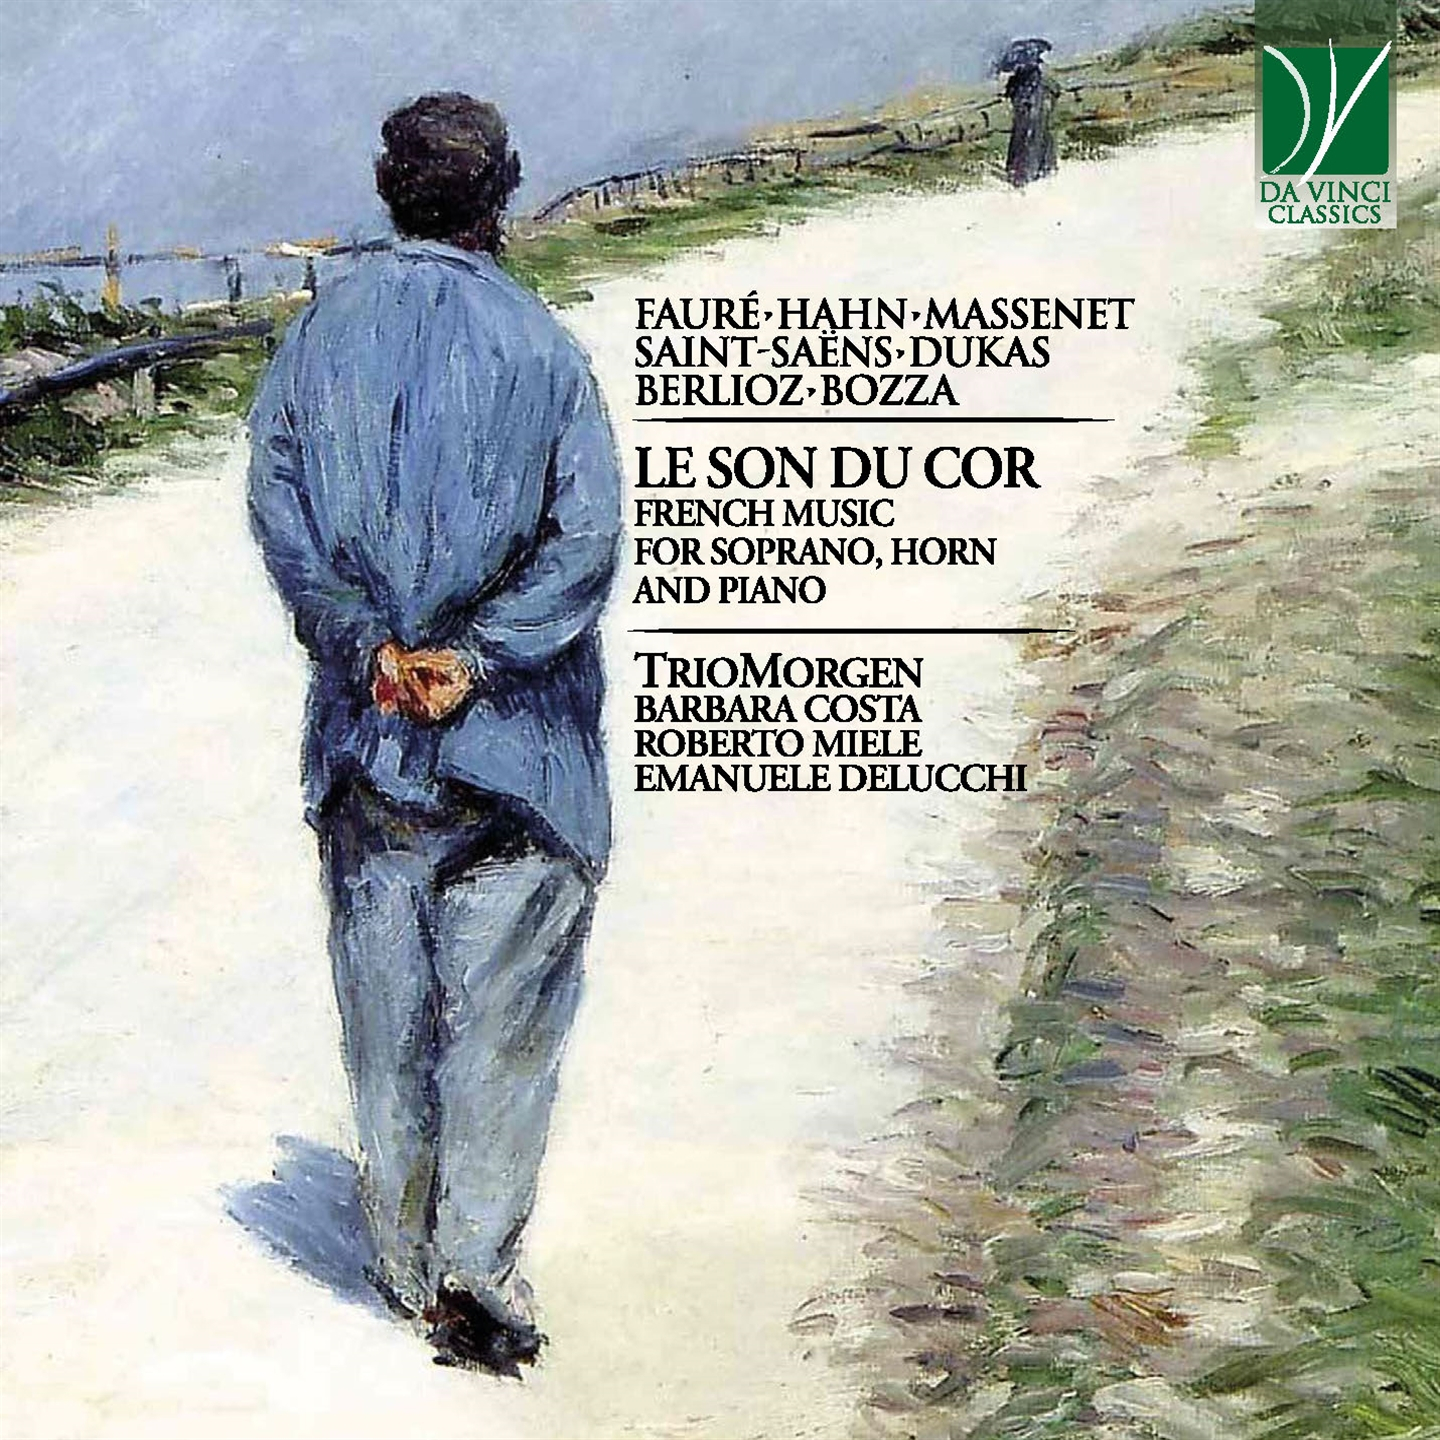 Morgen Trio - Le Son Du Cor: French Music For Soprano, Horn And Piano - 第 1/1 張圖片